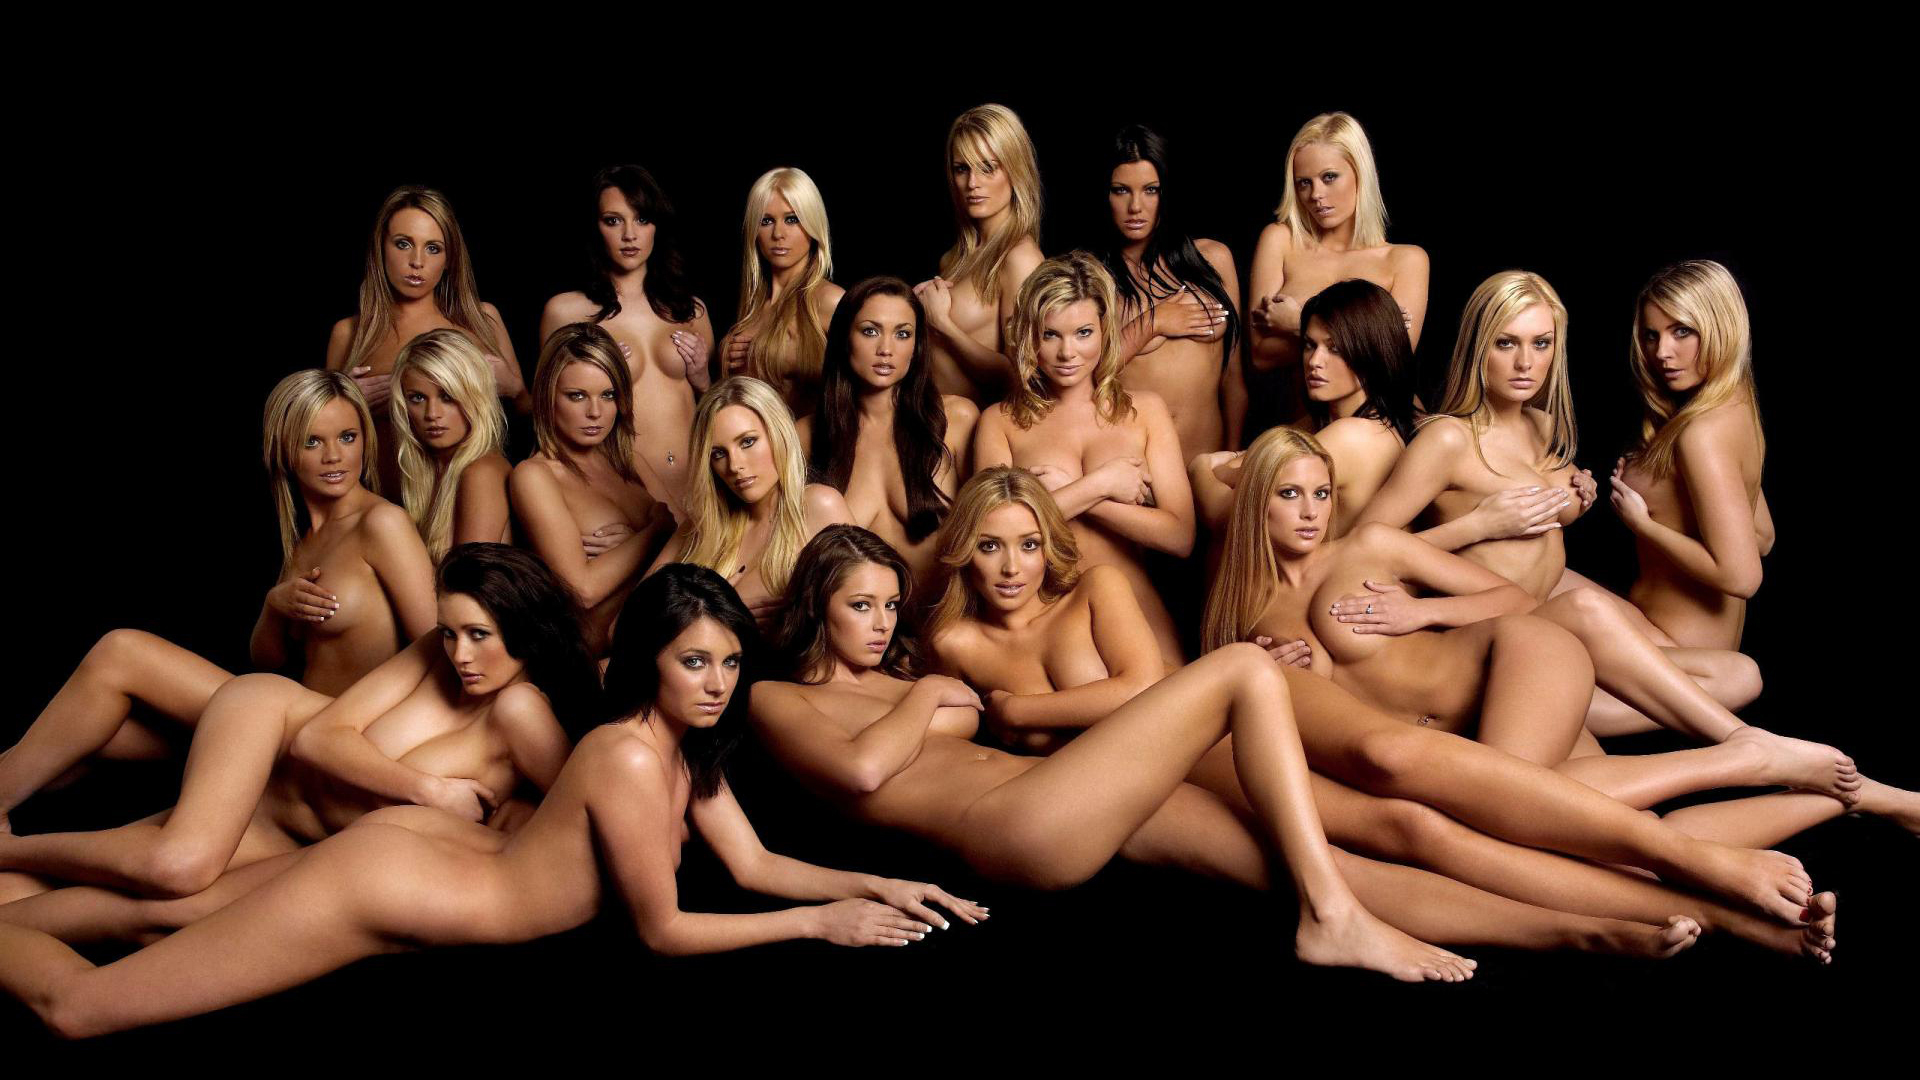 х голые девушки обои и картинки на рабочий стол скачать бесплатно на сайте заточка63.рф